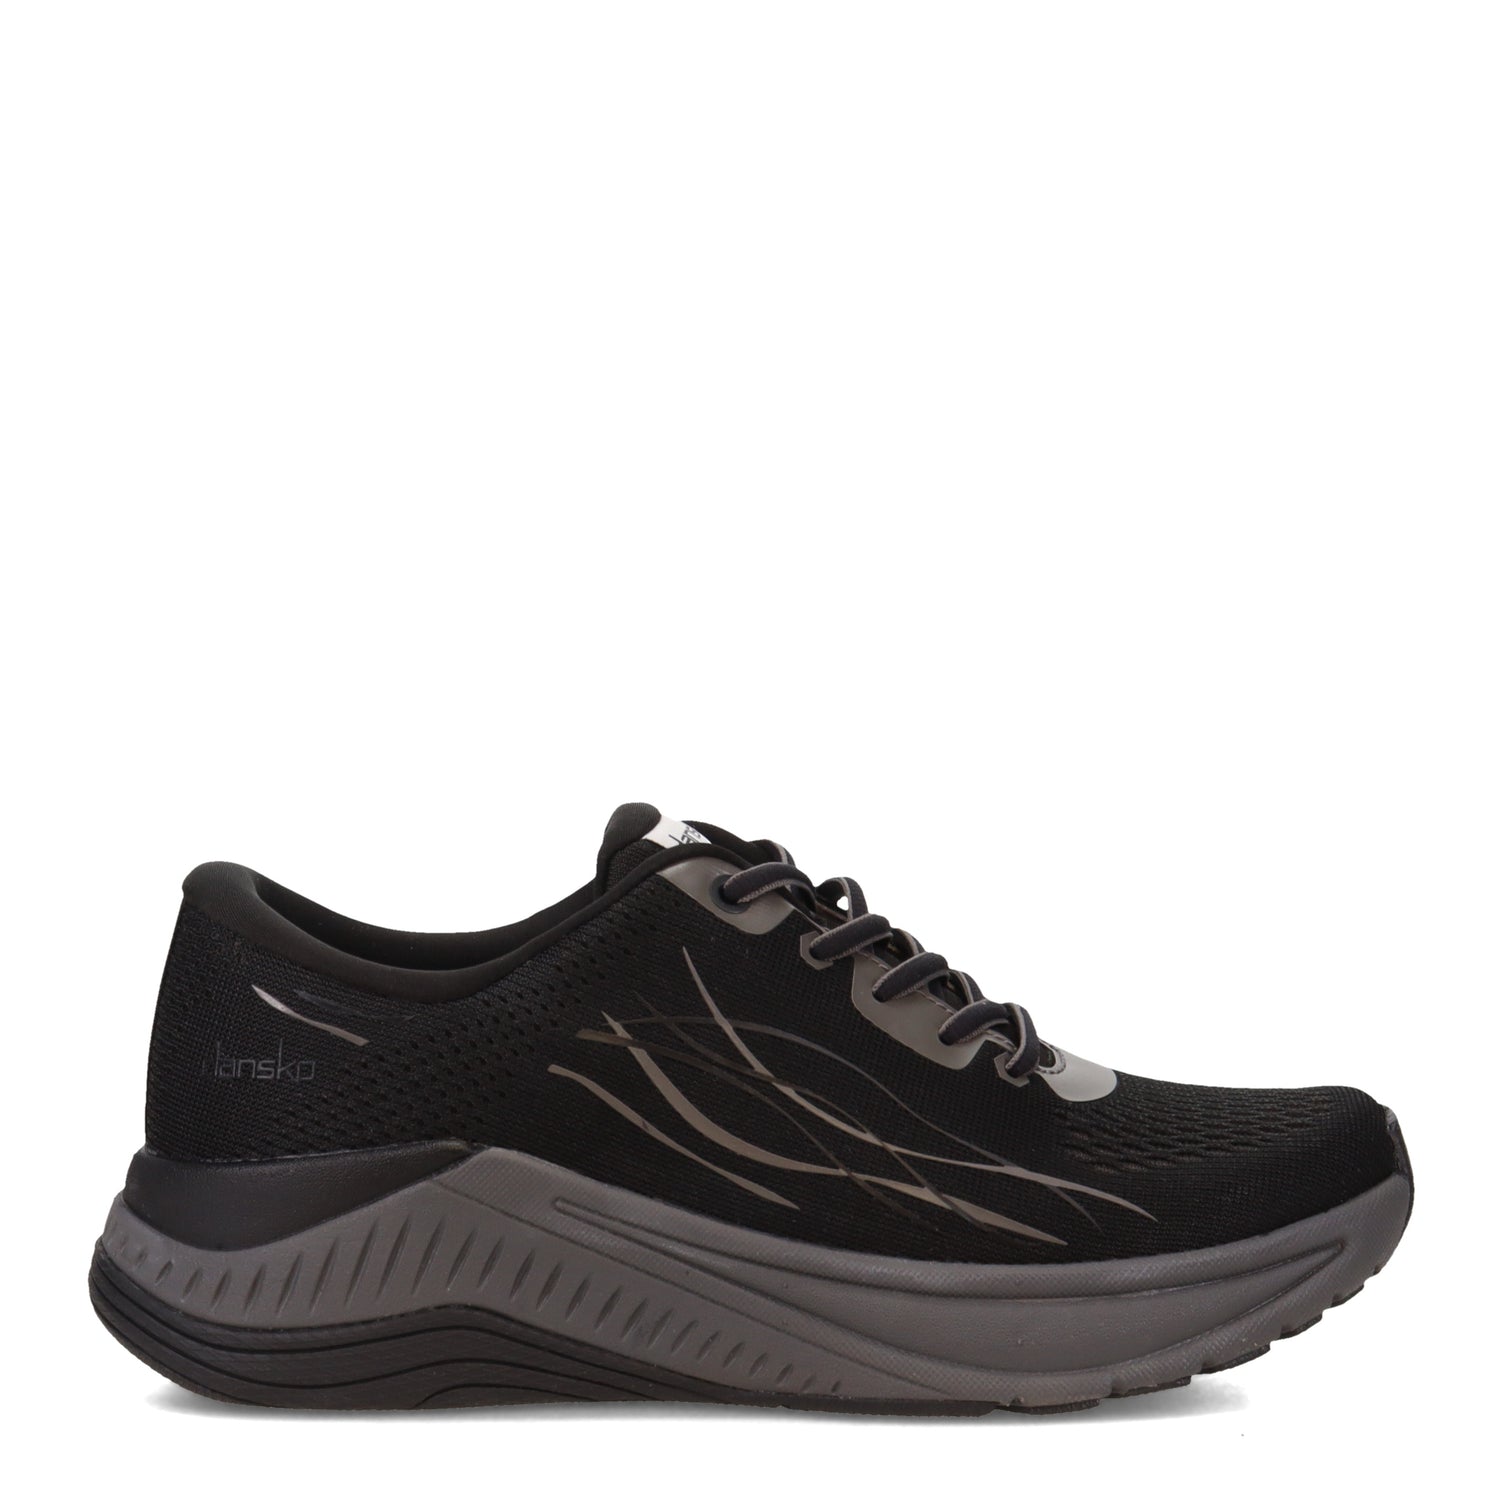 Peltz Shoes  Women's Dansko Pace Sneaker Black/Grey 4205-100294